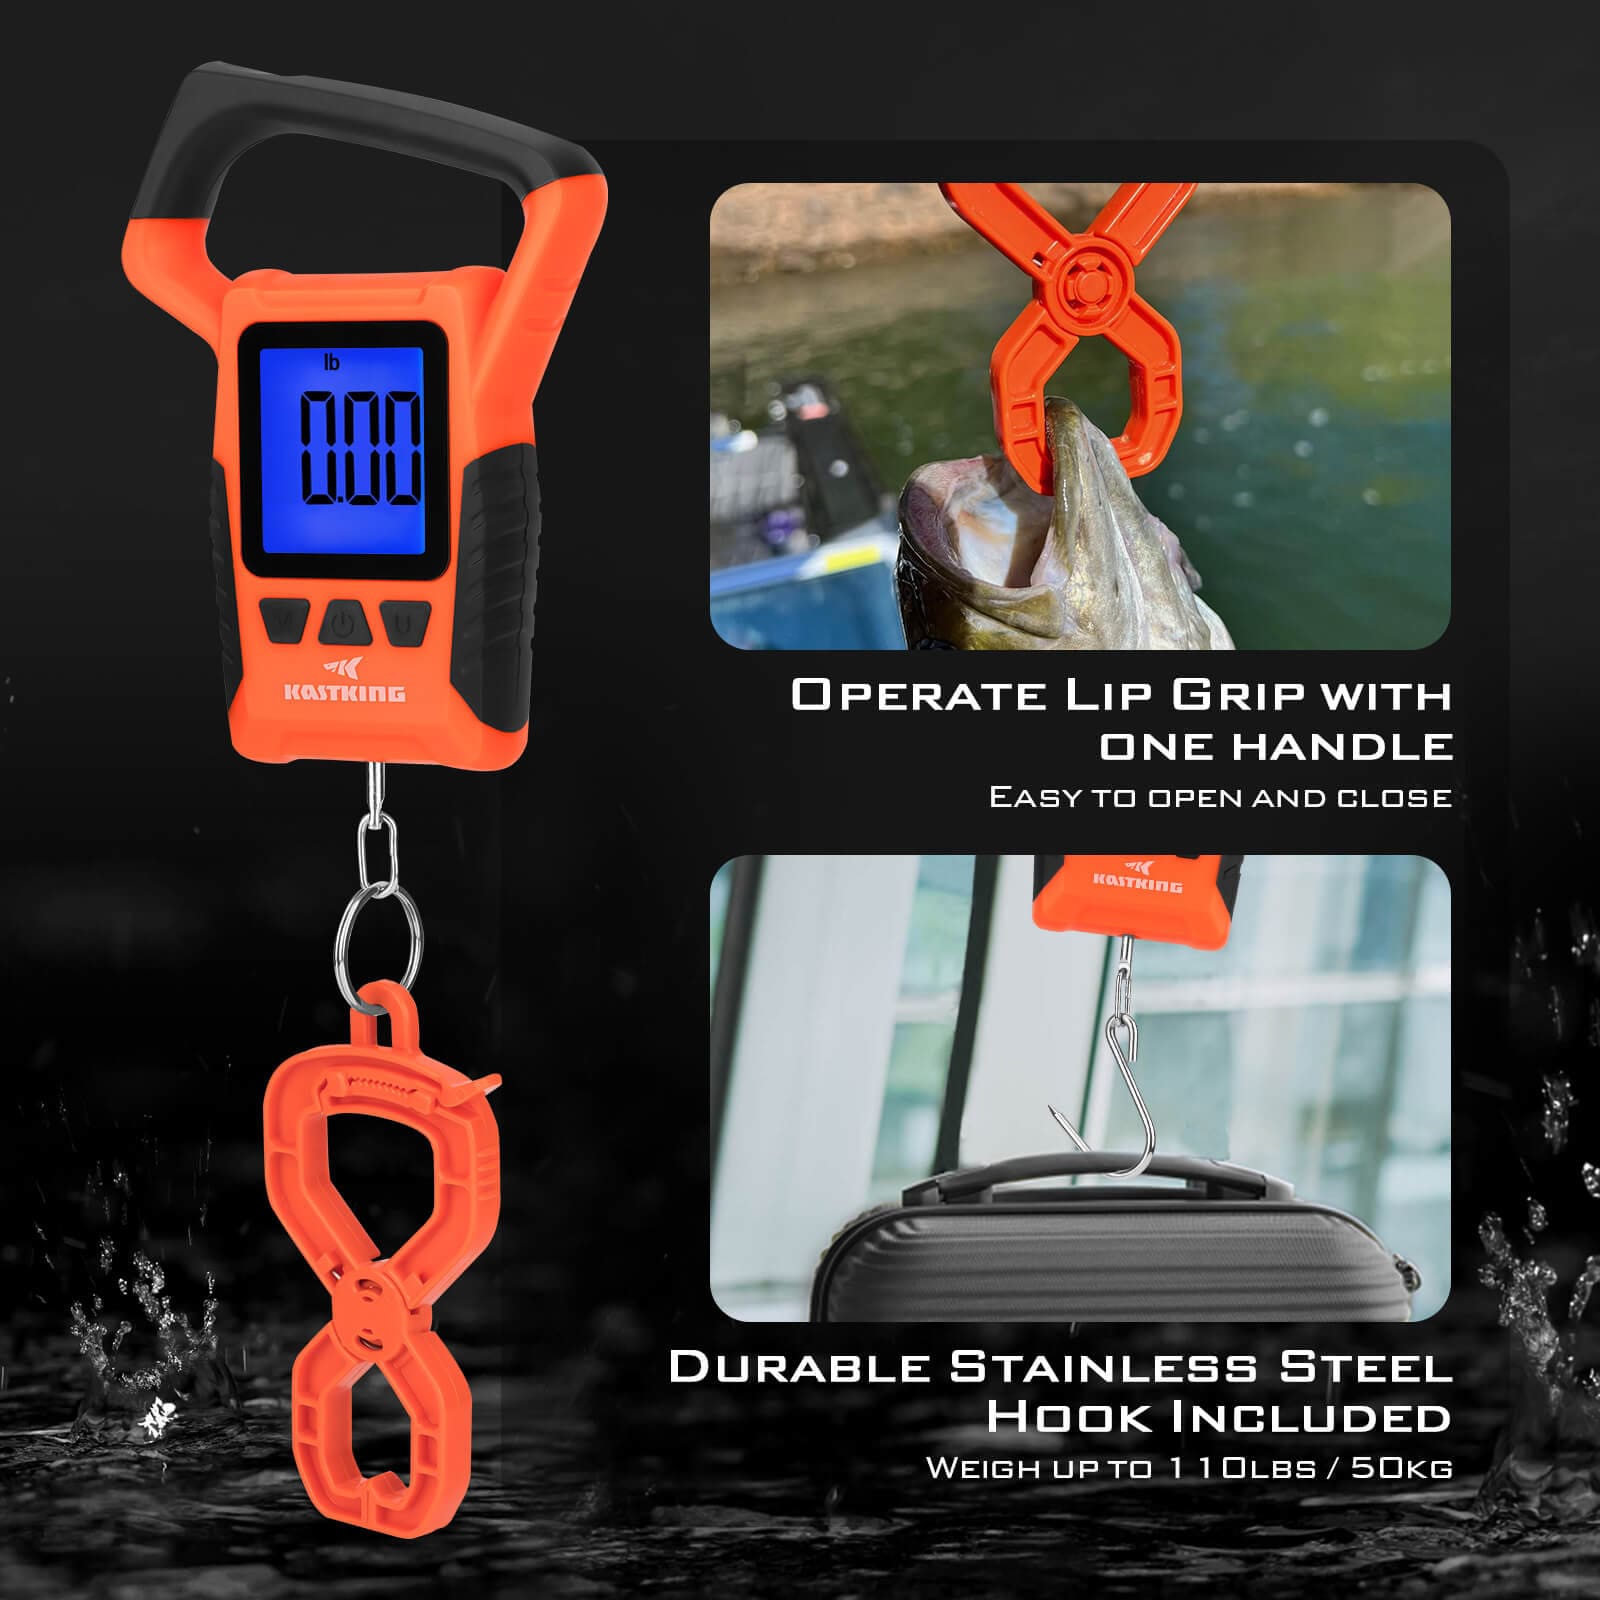 KastKing Waterproof Floating Digital Fishing Scale with No